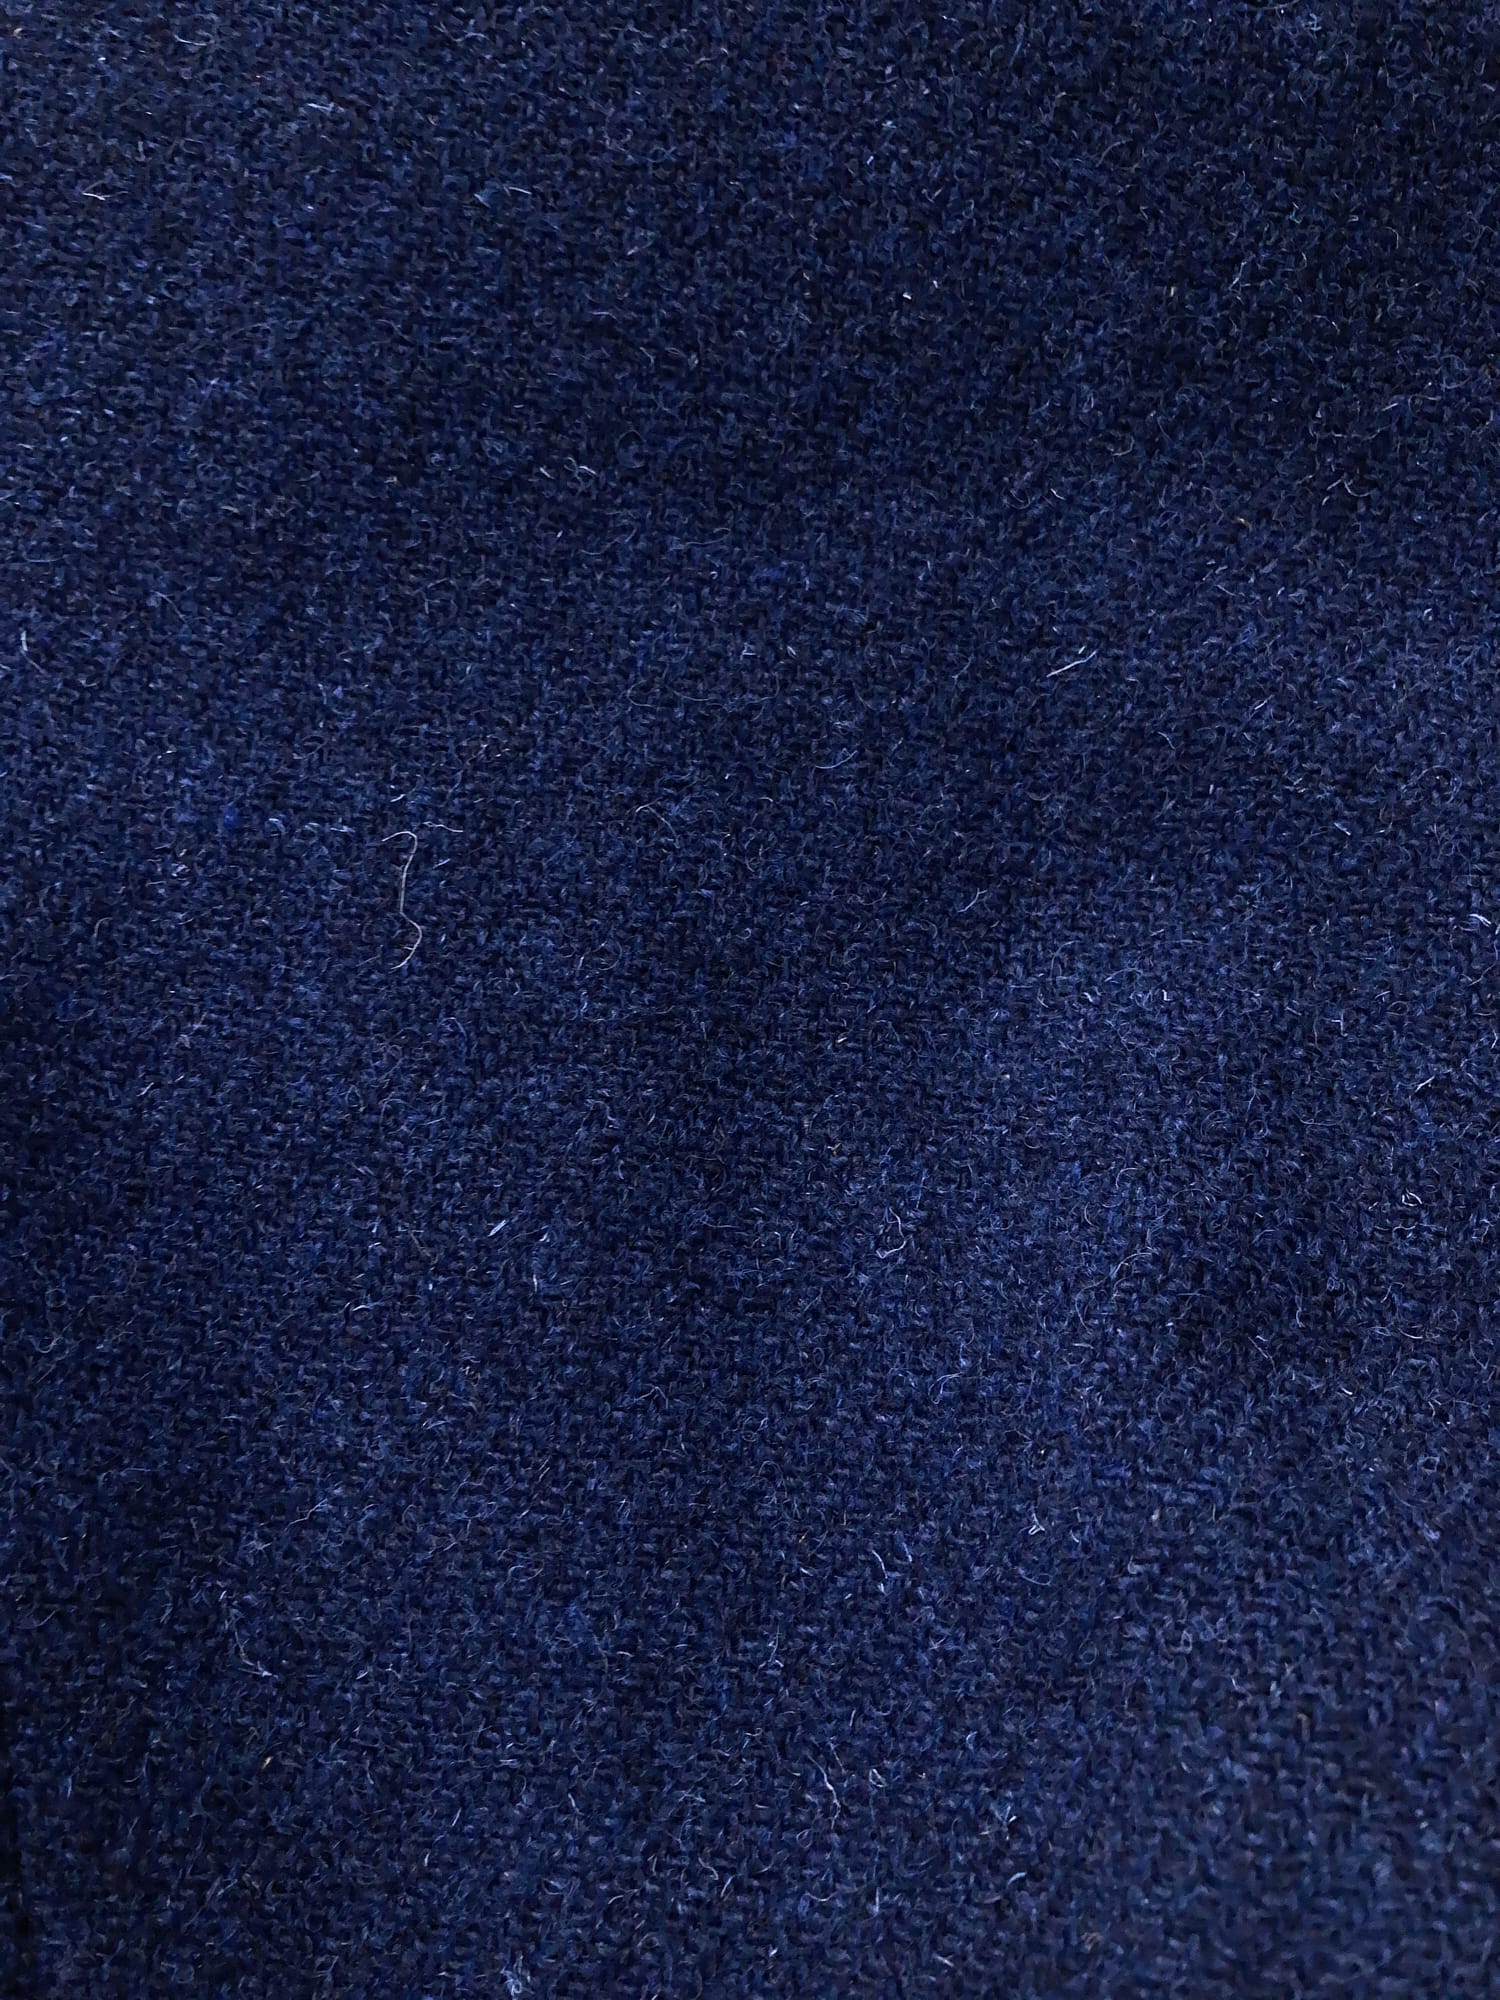 Dirk Bikkembergs 1990s dark blue wool Harris Tweed coat with large peak lapels